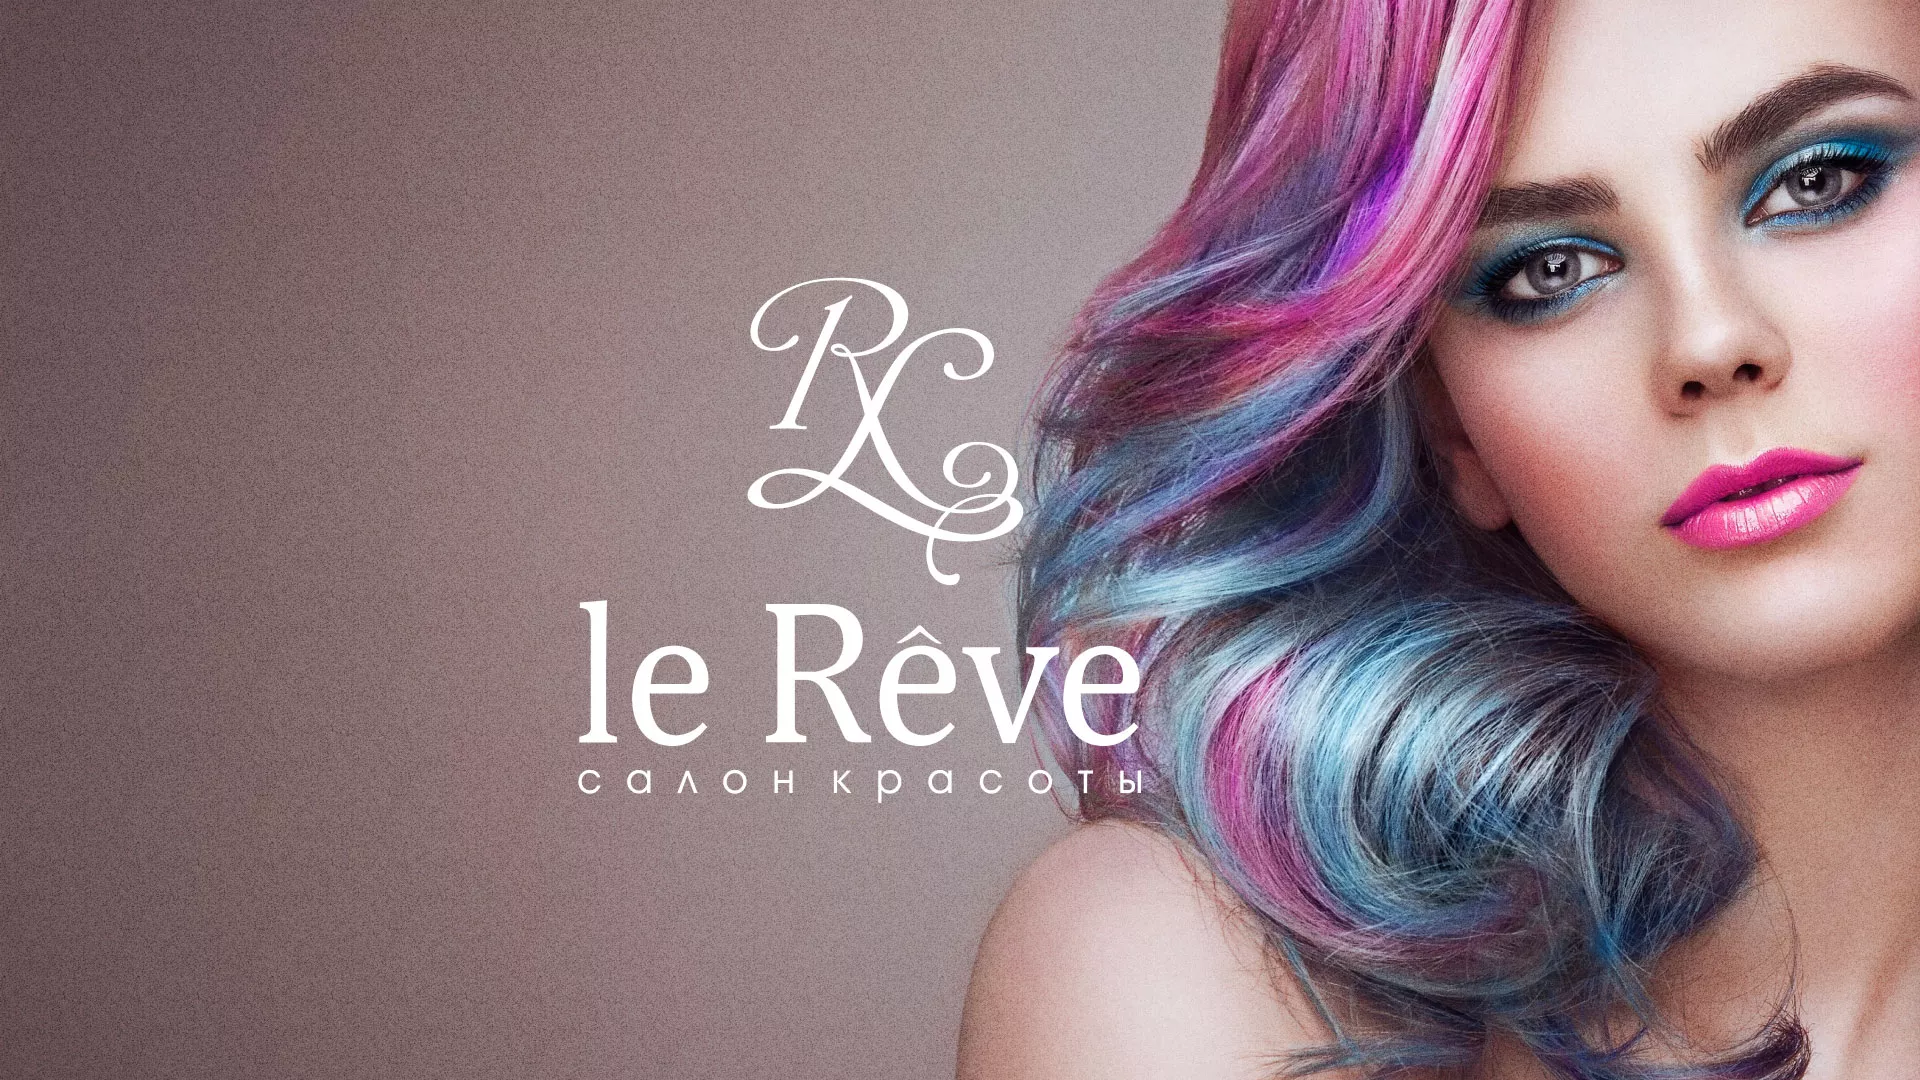 Создание сайта для салона красоты «Le Reve» в Твери